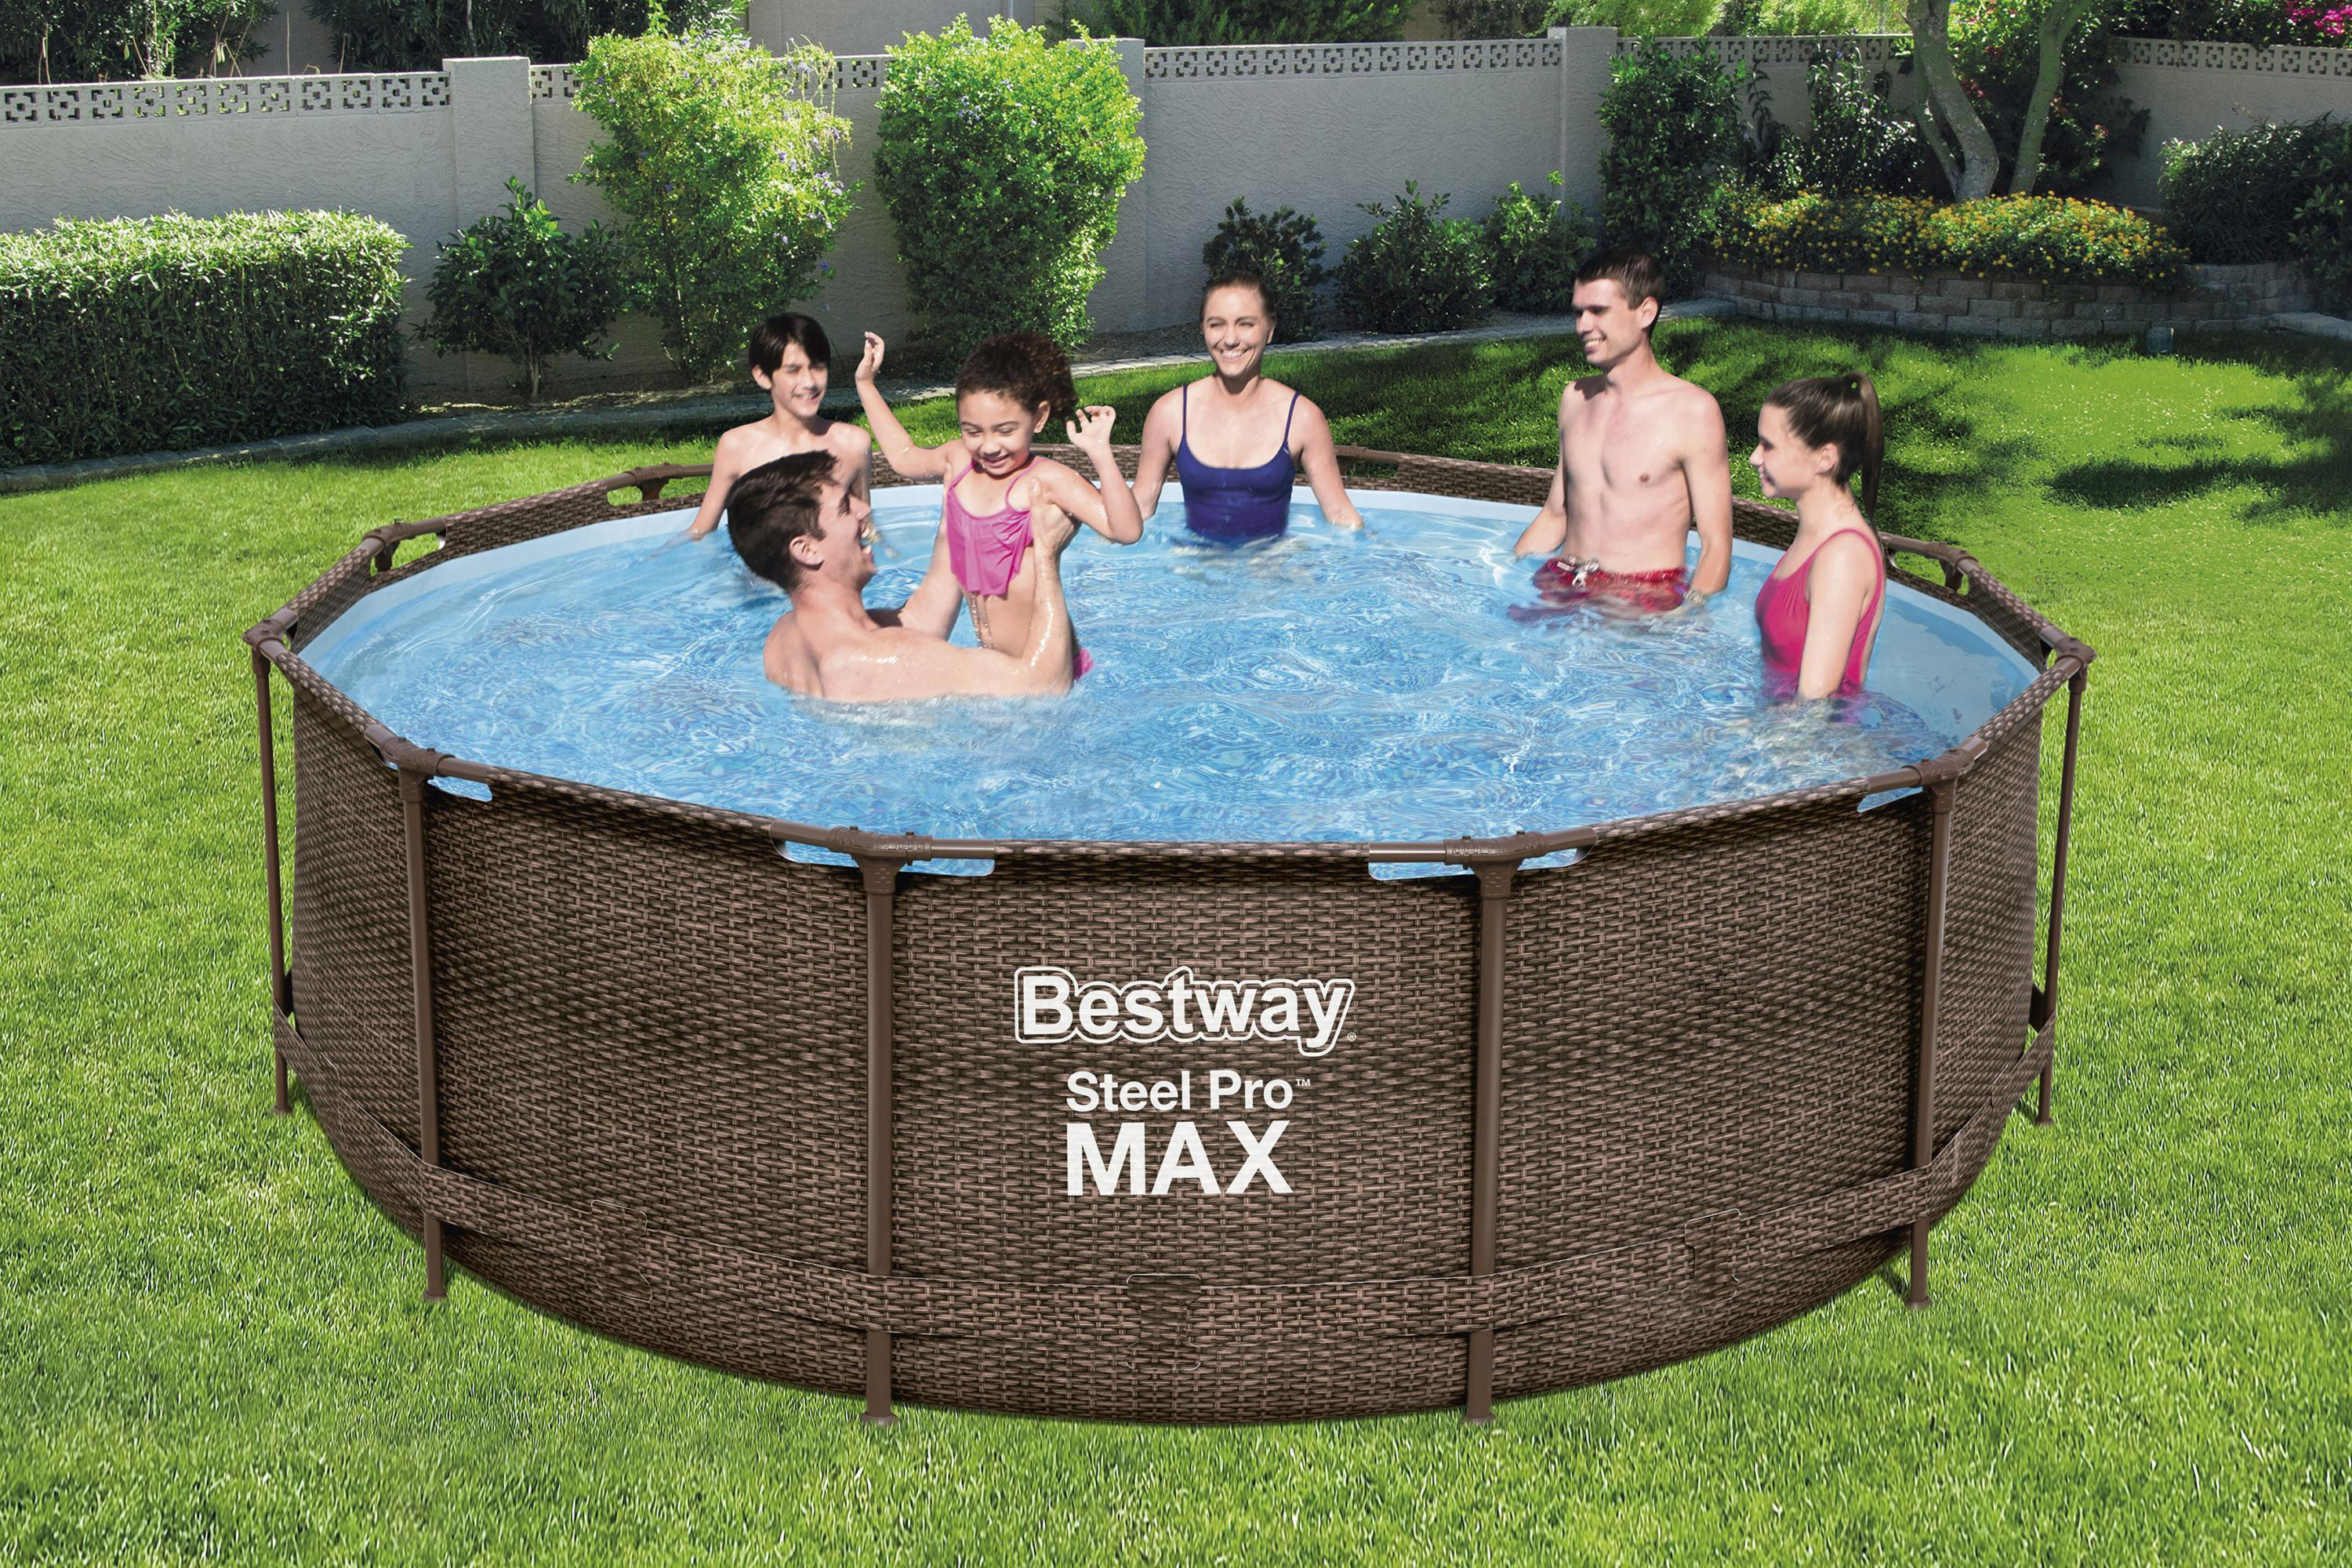 Max™ Steel Komplett-Set Pro Swimmingpool Mehrfarbig FramePool BESTWAY 366